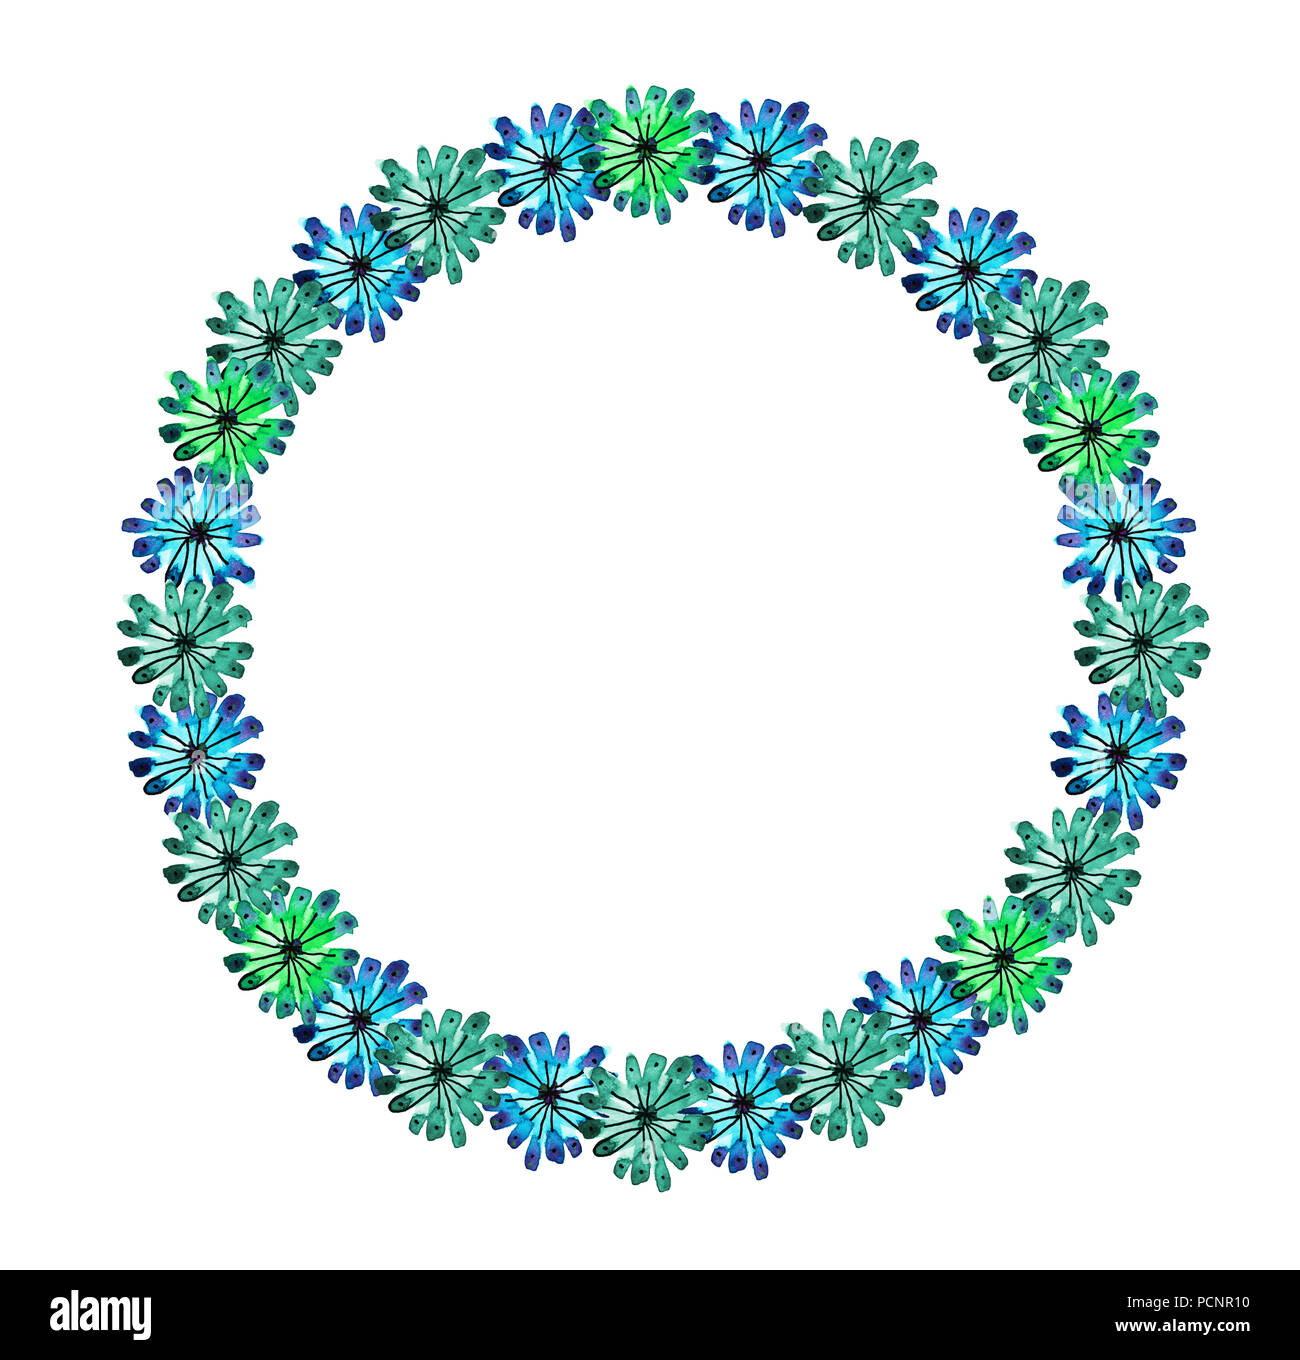 Aquarelle et encre illustration de guirlande. Fleur multicolore garland en tons de vert, bleu. La couronne de mariage, boho, romantique. Fond blanc Banque D'Images